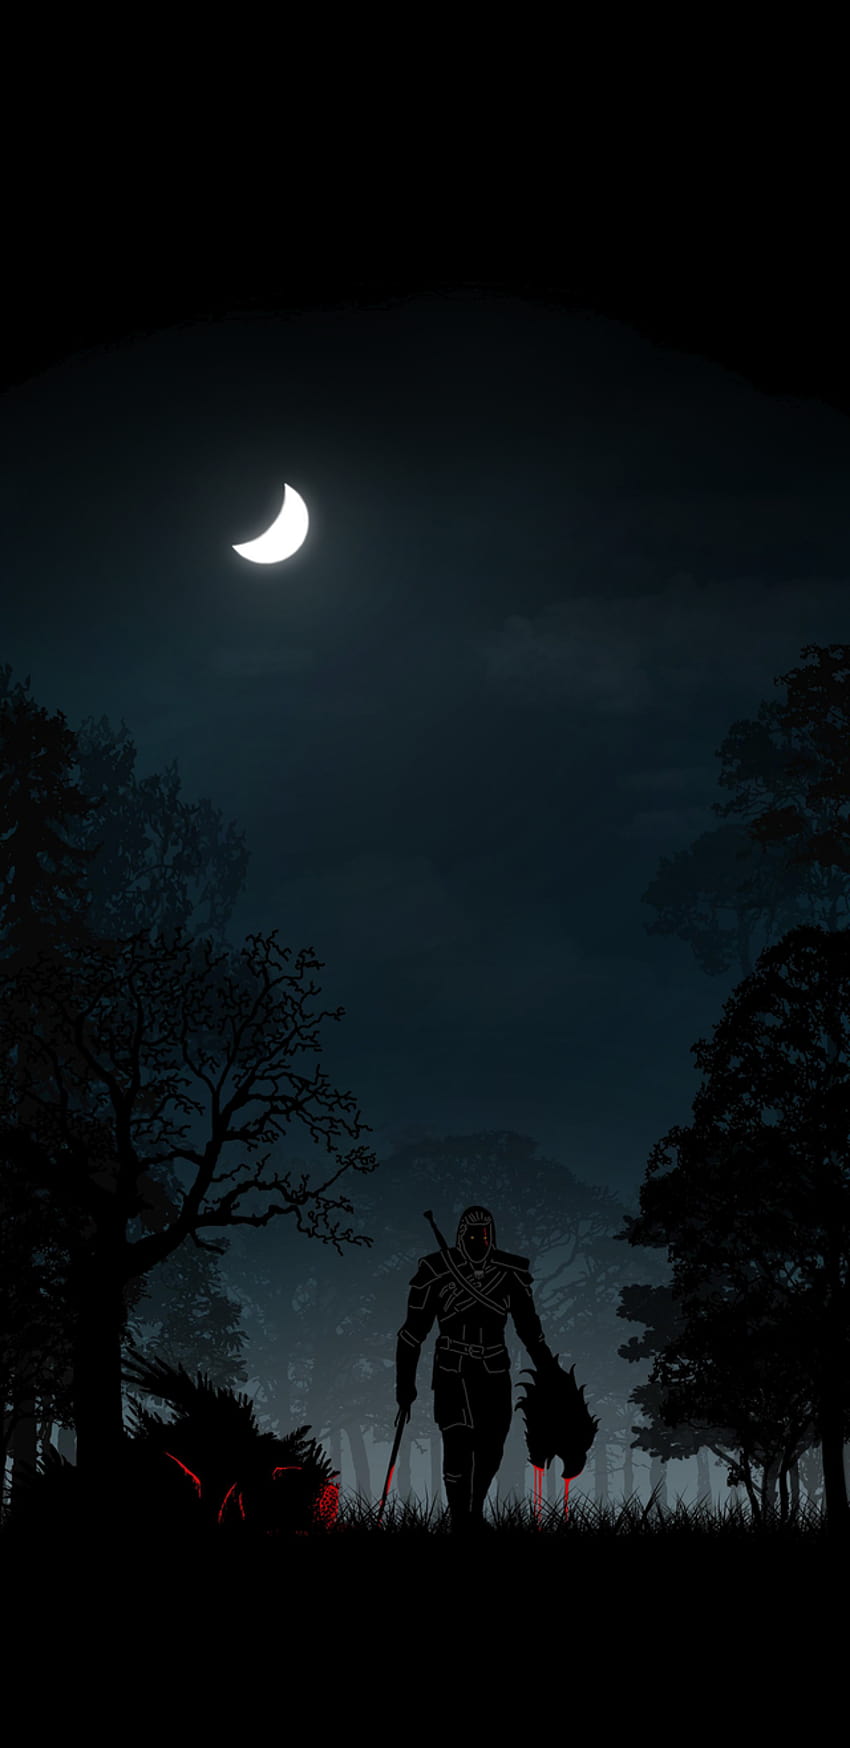 The Witcher 3 / Geralt de Rivia [1440x2960], Witcher 3 amoled fondo de pantalla del teléfono